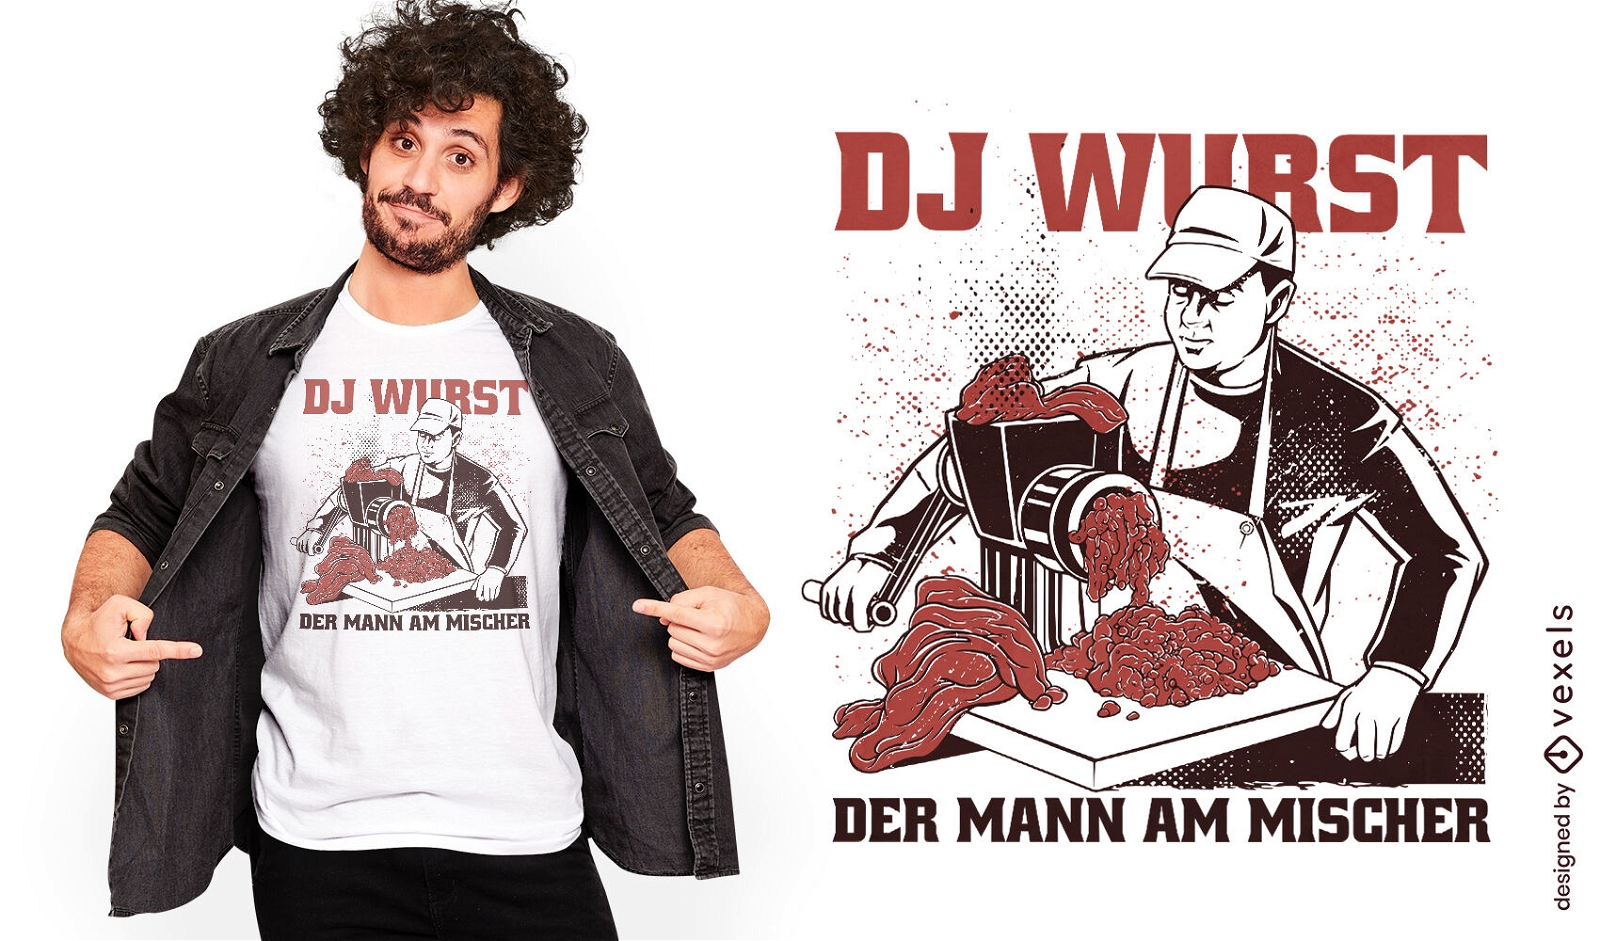 Mixer meat DJ t-shirt design